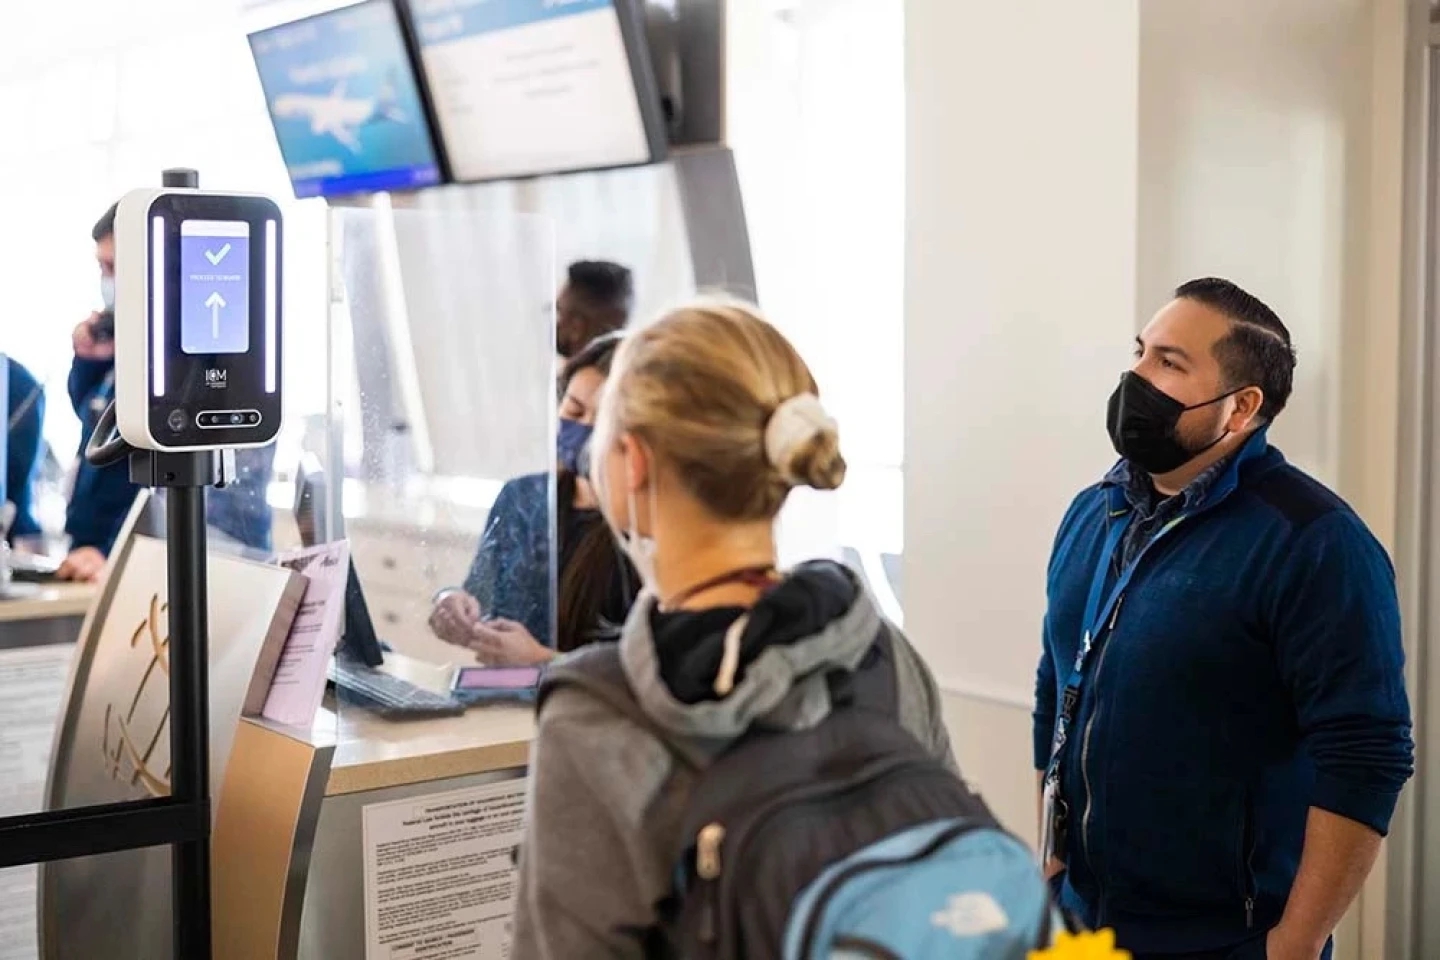 Alaska Airlines đang đầu tư vào công nghệ sinh trắc học như nhận dạng khuôn mặt để cải thiện trải nghiệm của khách hàng. Ảnh: @Hãng hàng không Alaska.